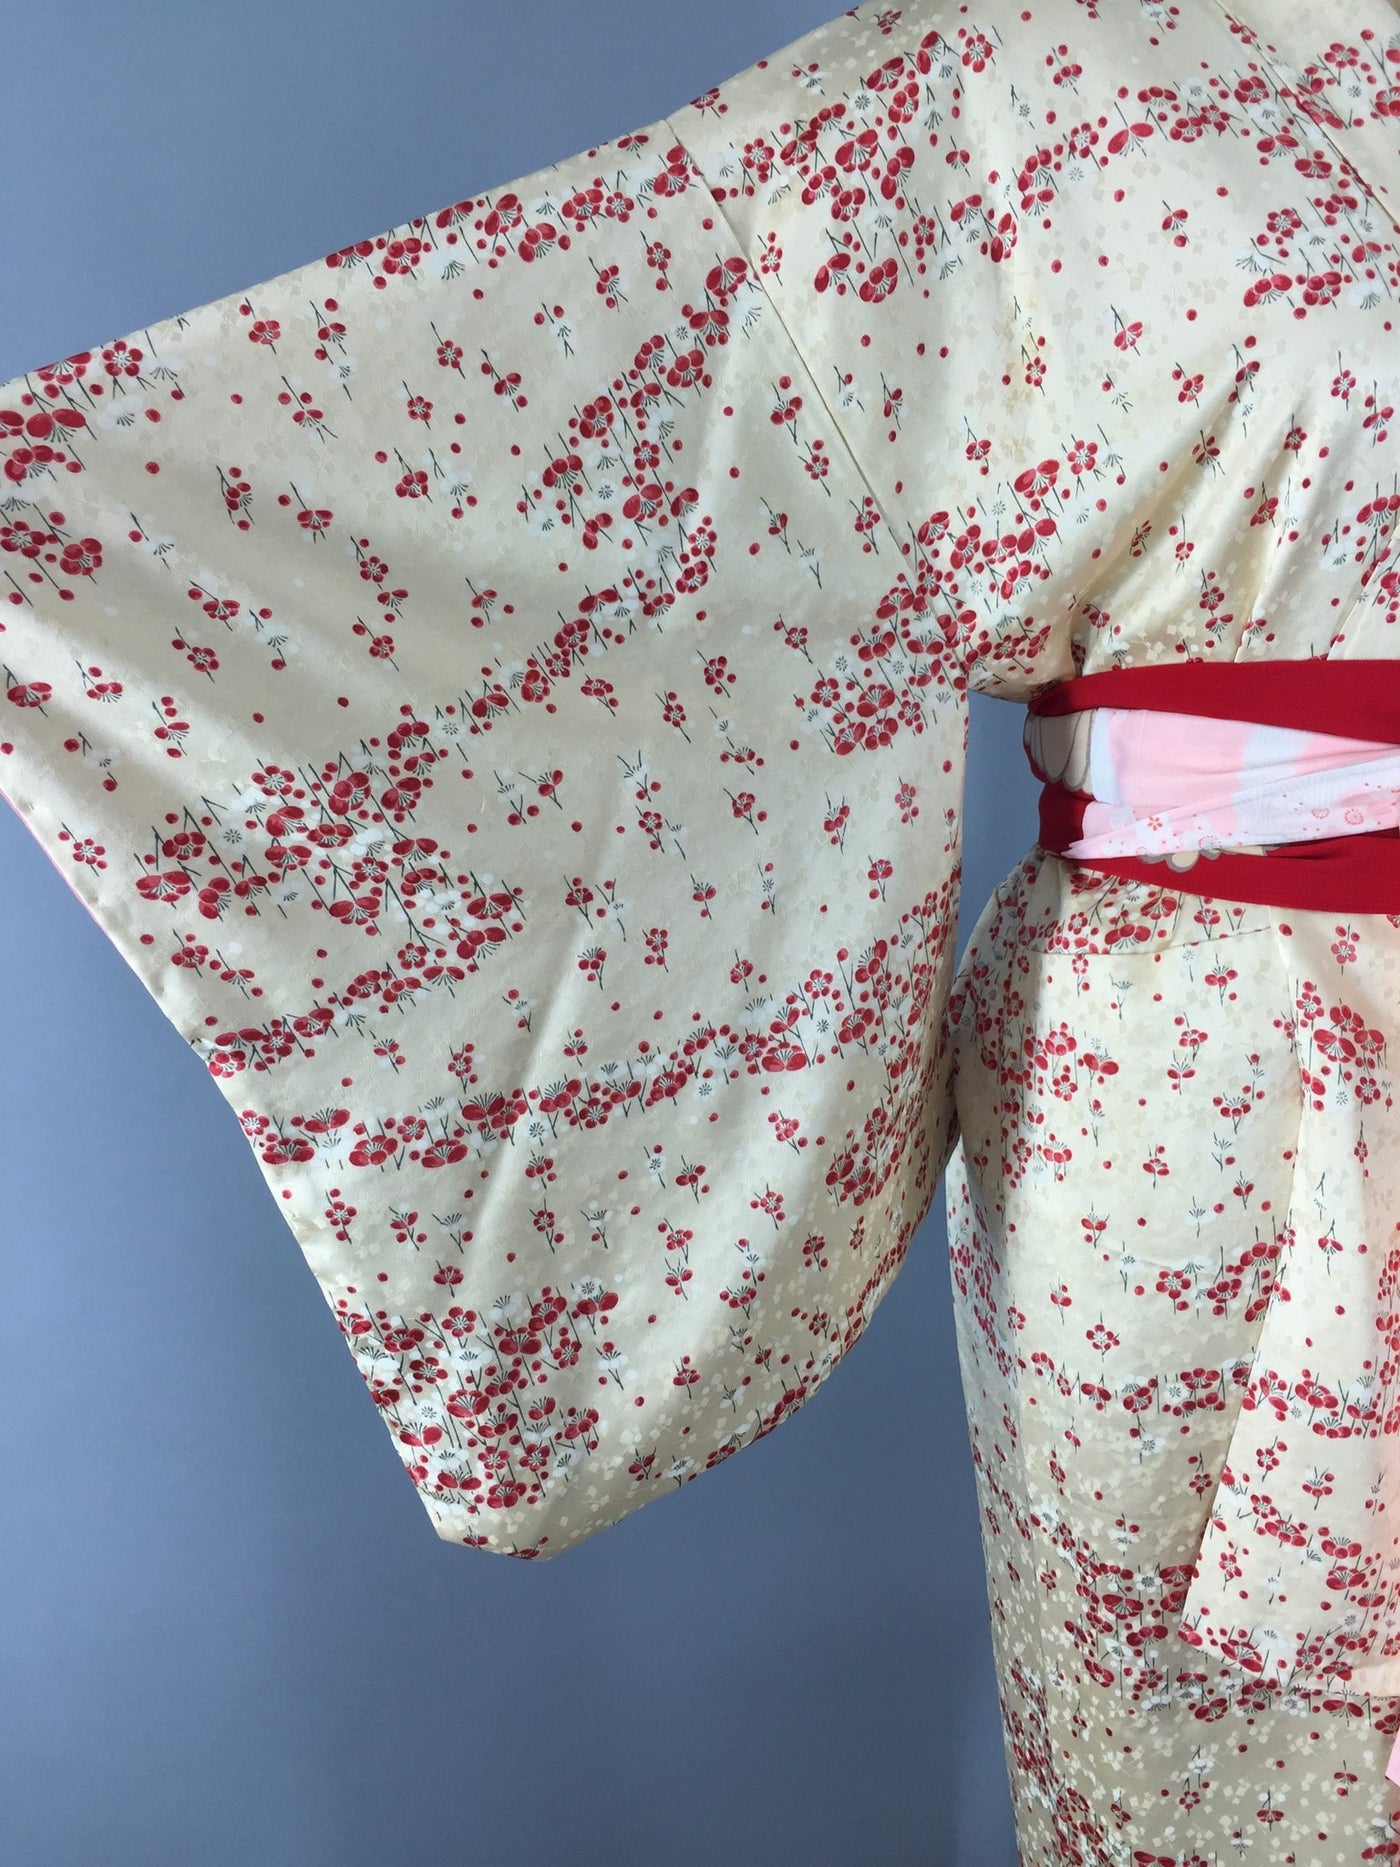 Vintage 1950s Silk Kimono Robe / Ivory Buttercream & Red Satin Floral Print - ThisBlueBird